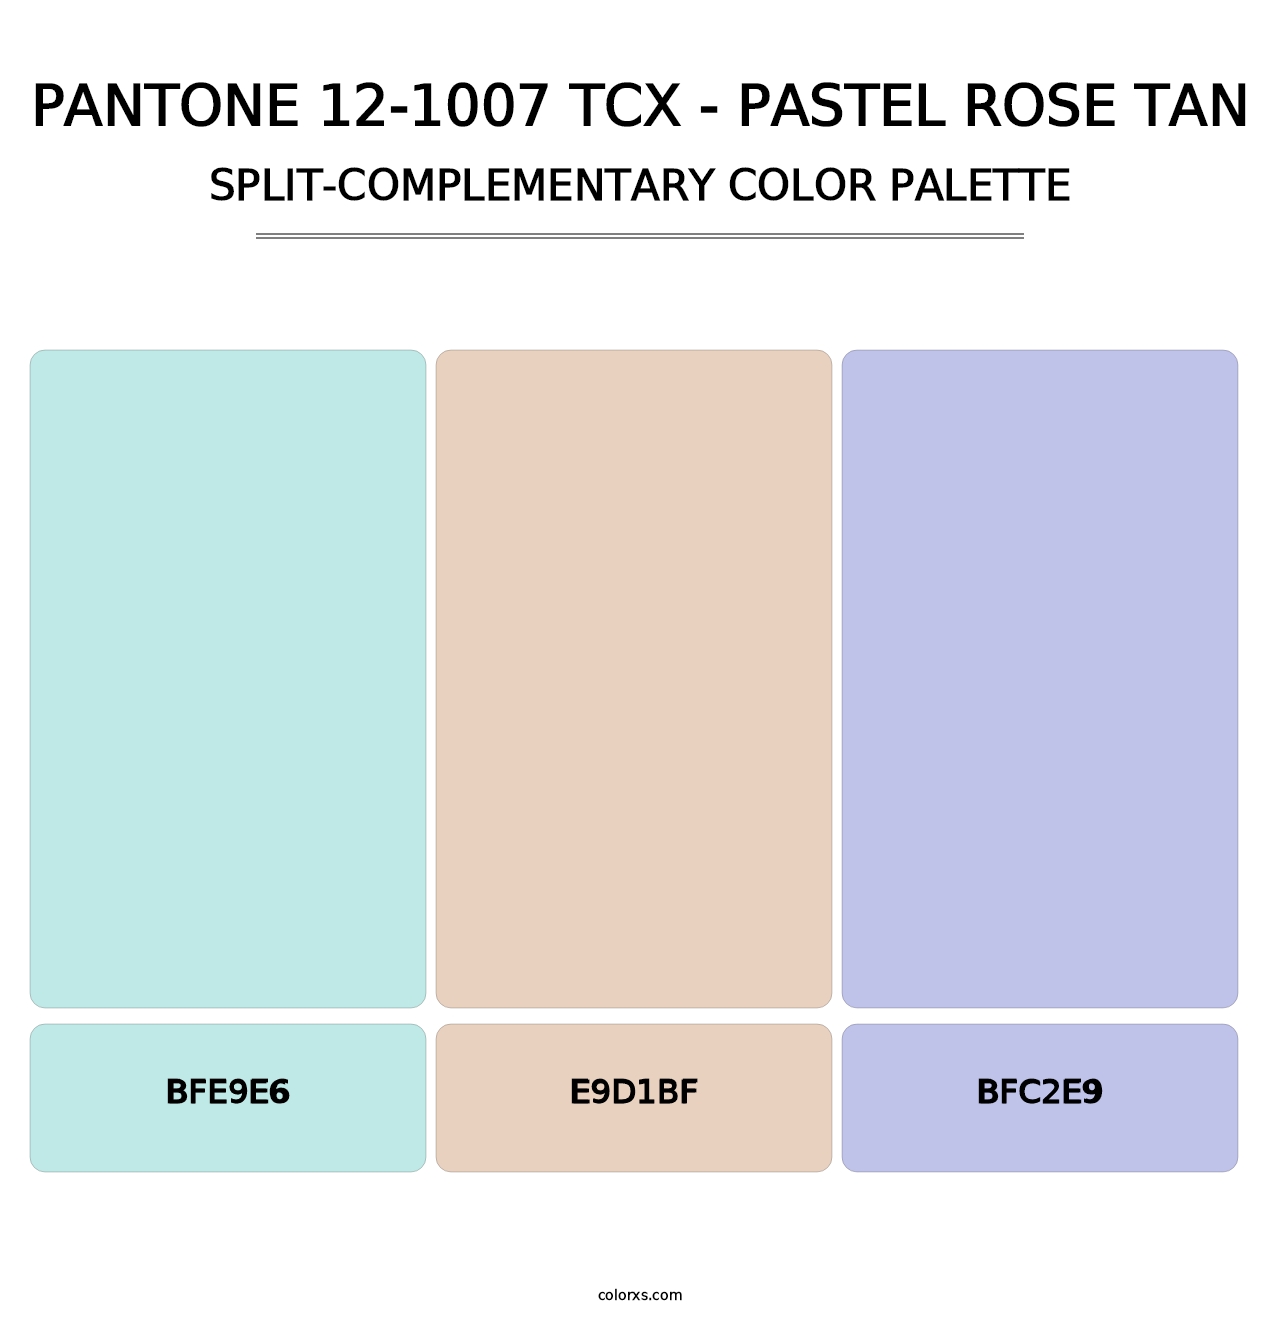 PANTONE 12-1007 TCX - Pastel Rose Tan - Split-Complementary Color Palette